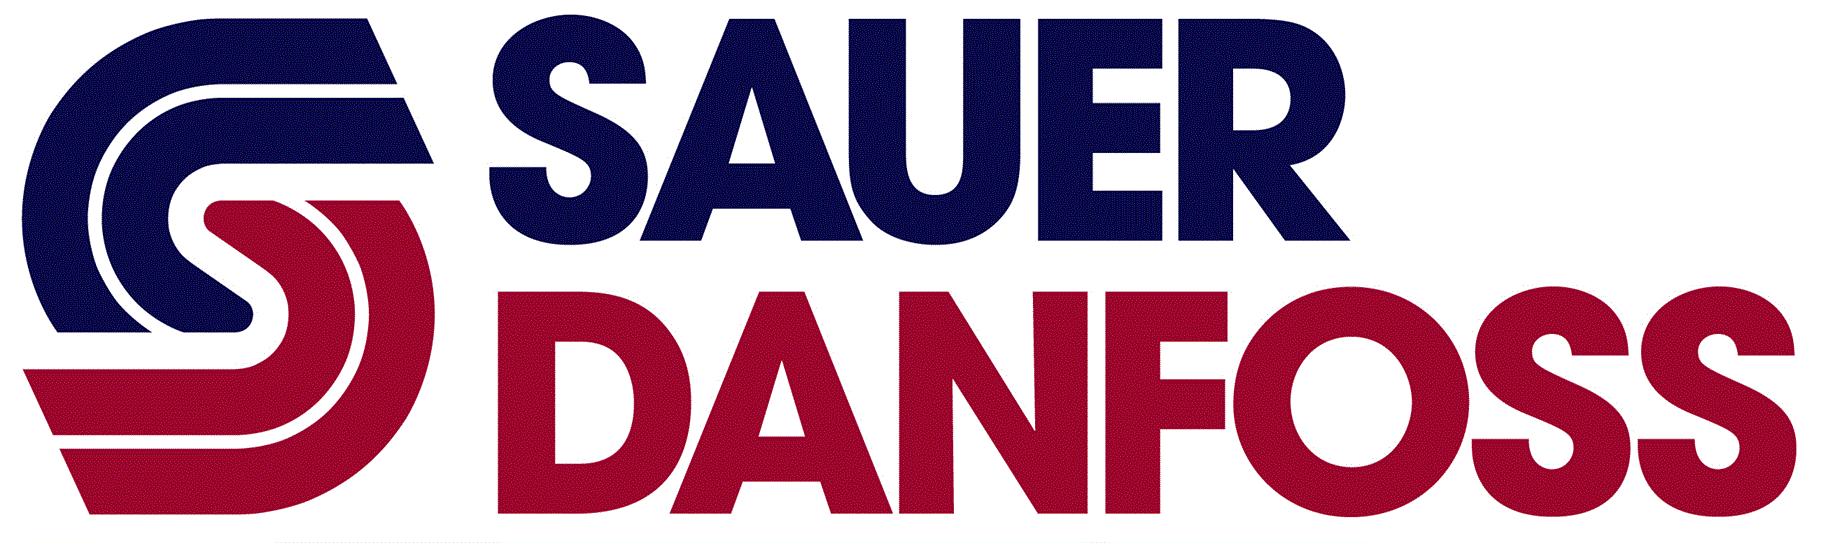 Sauer-Danfoss-Logo